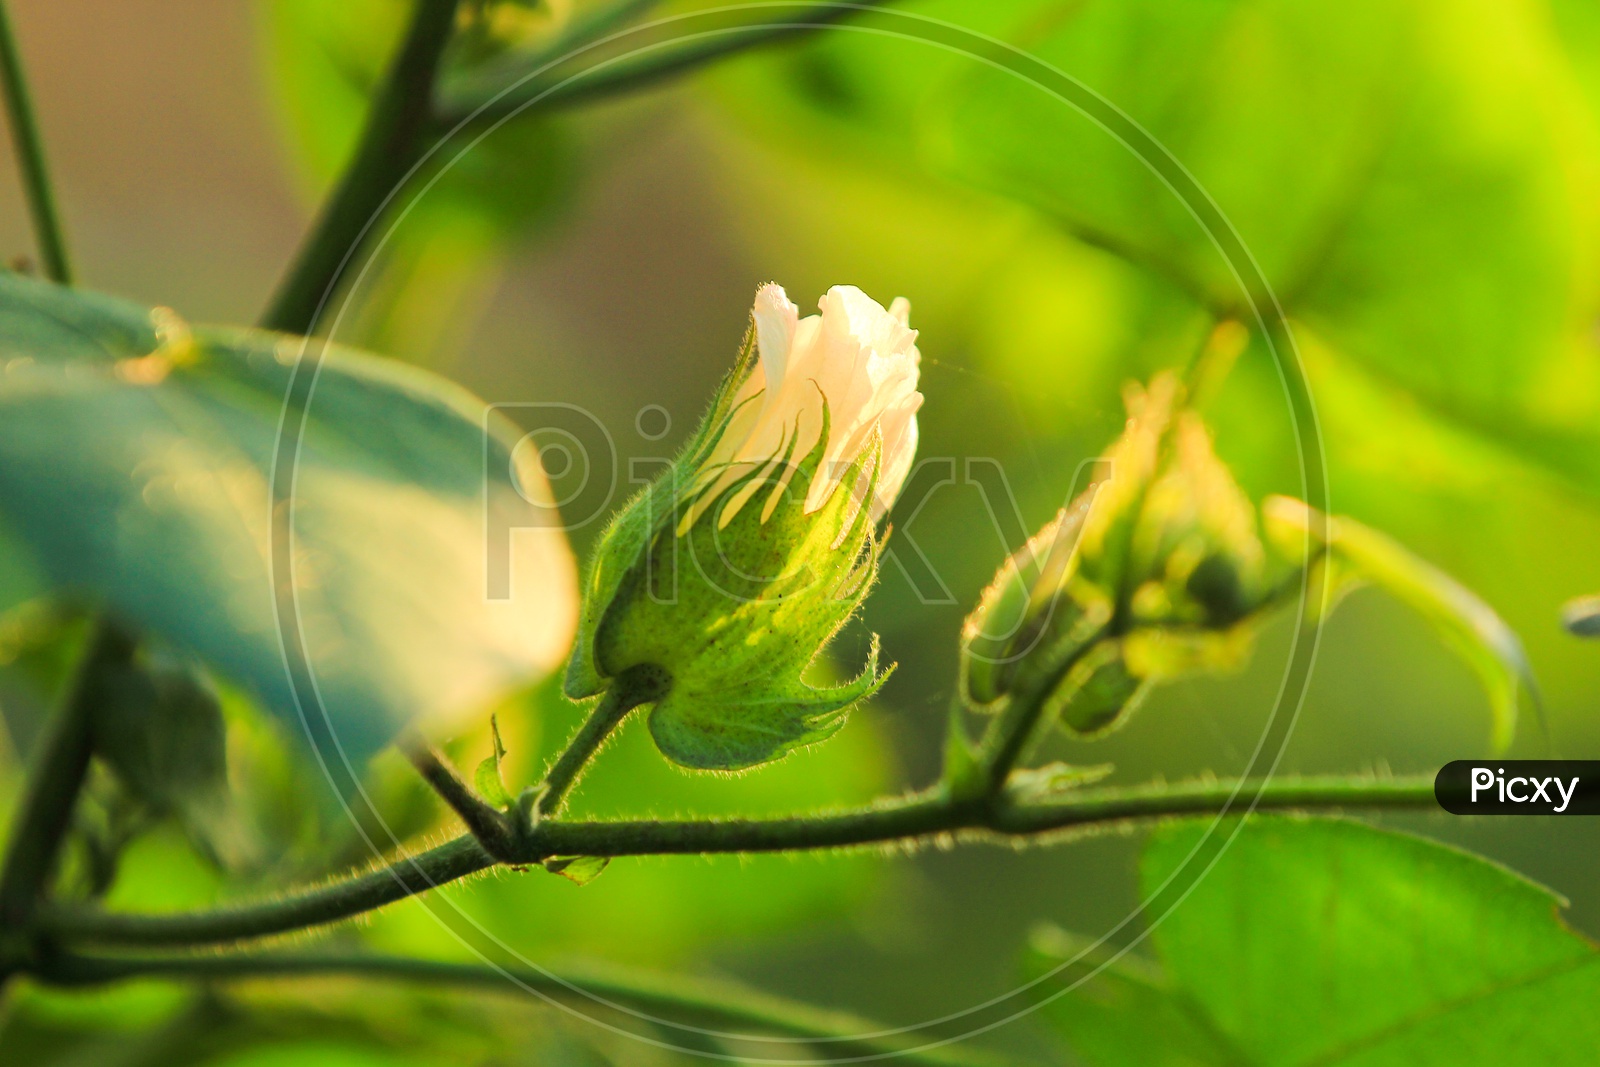 A Cotton Plant Flower Closeup Shot